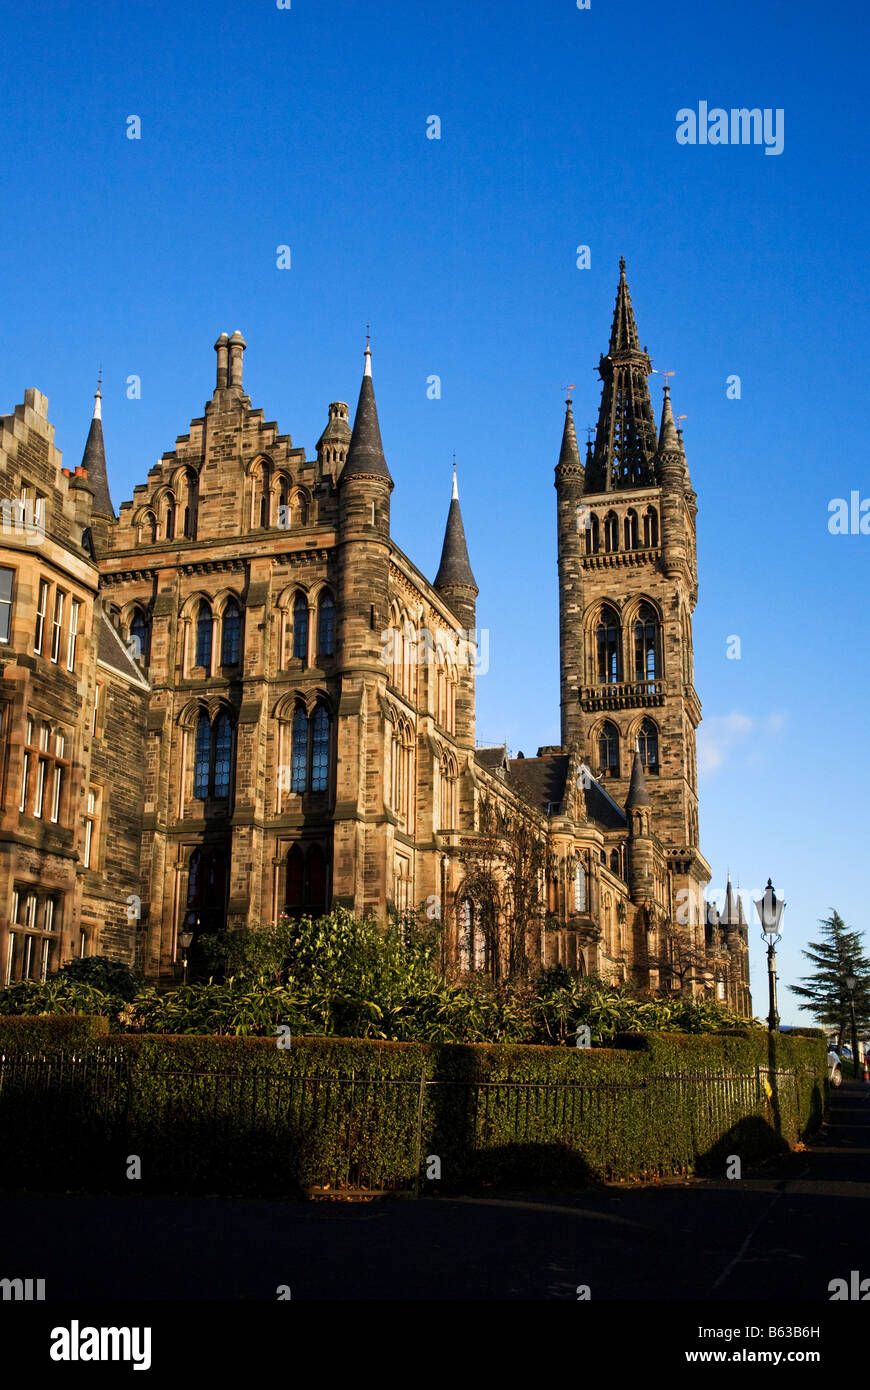 Glasgow University on Gilmorehill, Glasgow, Scotland. Stock Photo